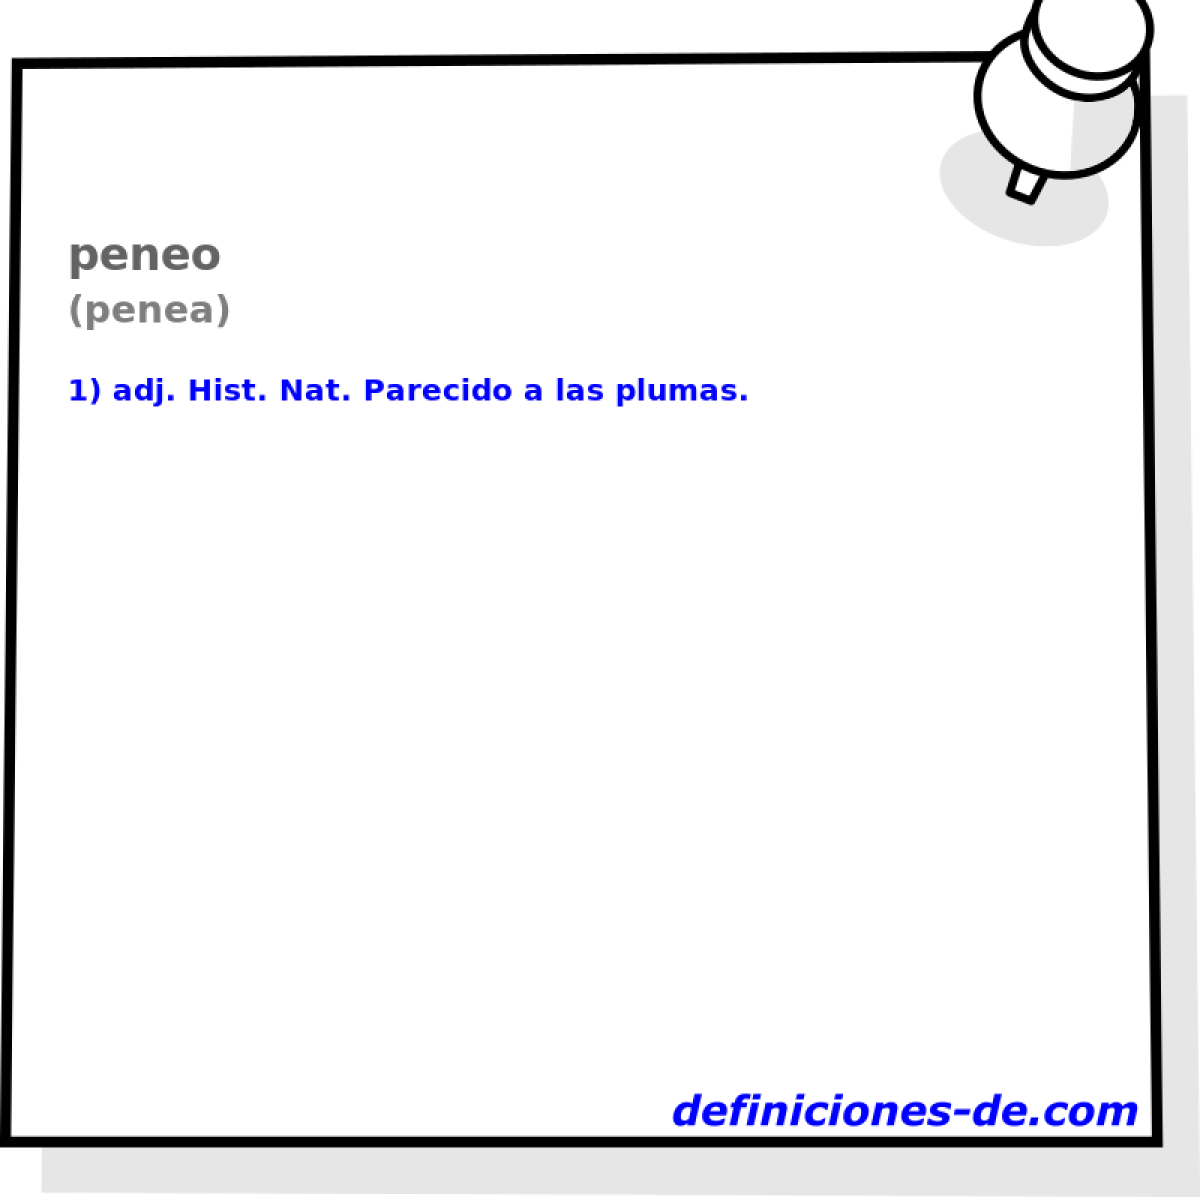 peneo (penea)